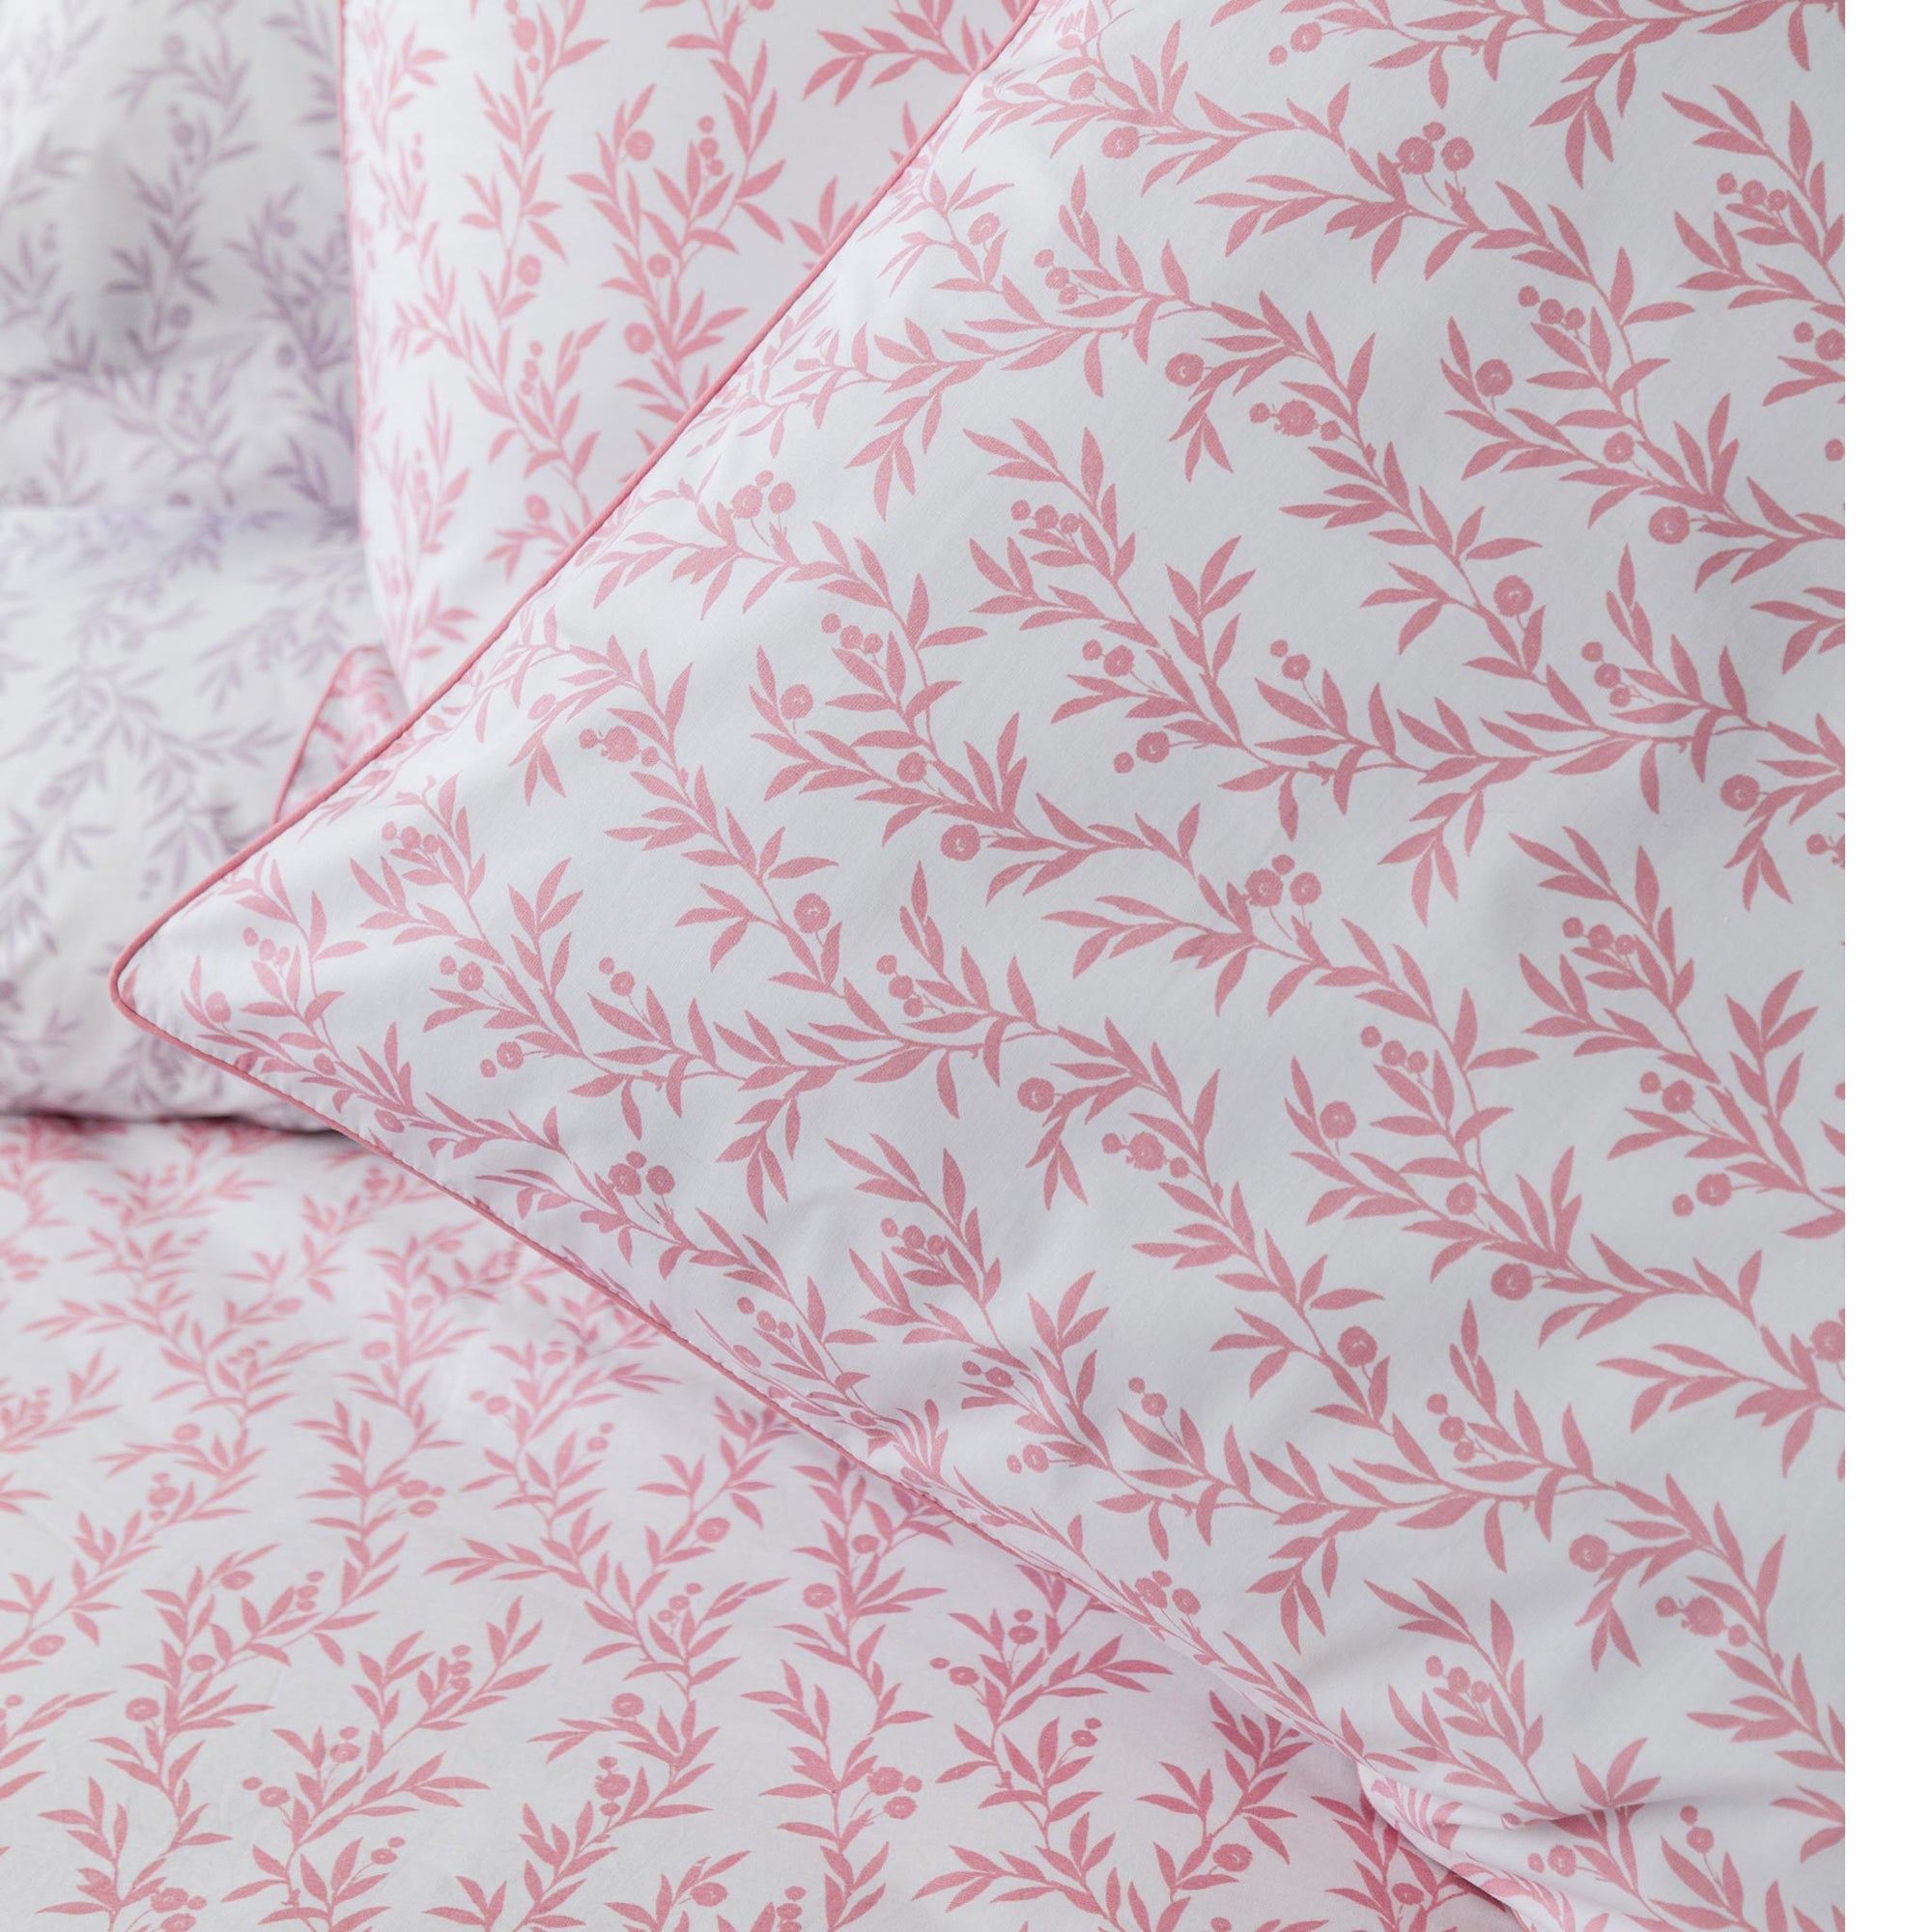 Bettwäsche-Set aus reinem Perkal mit Blumenmuster in Flieder und Rosa